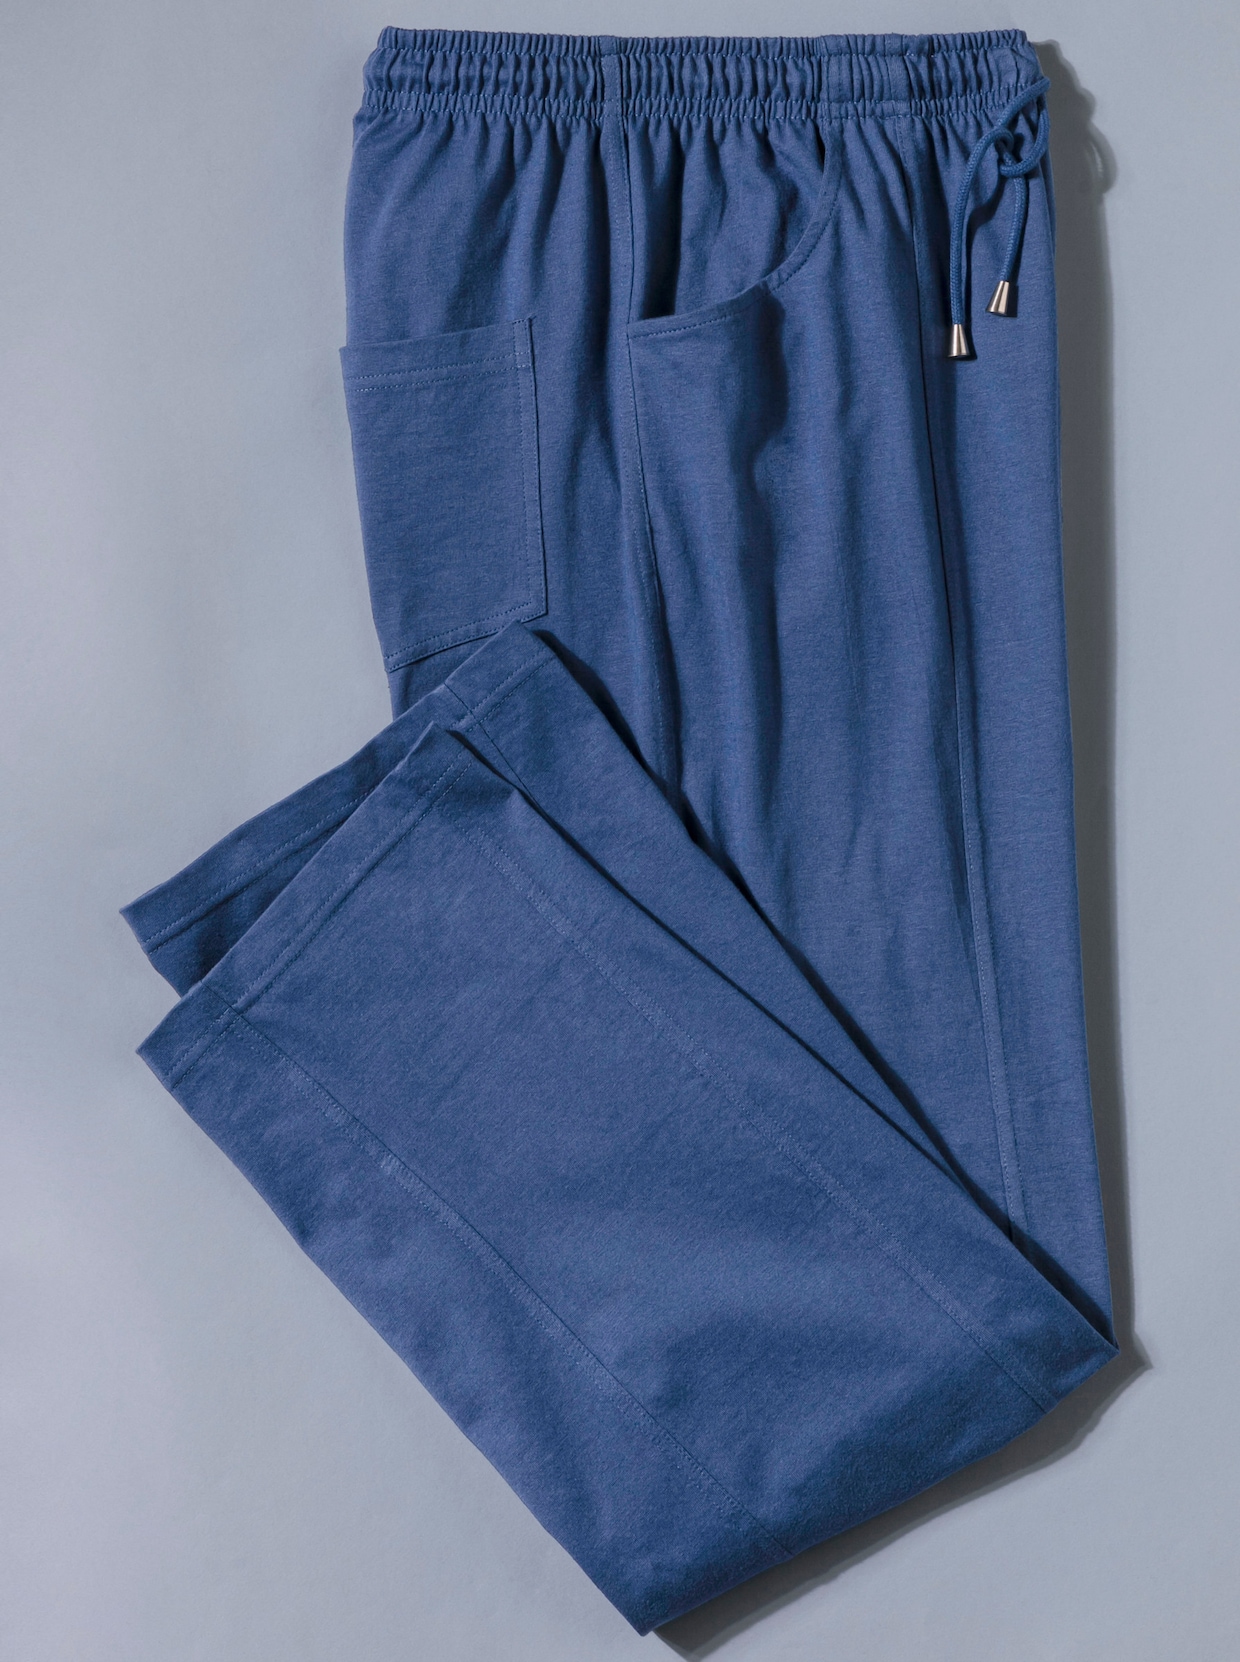 Voľnoč.nohav - džínsová modrá